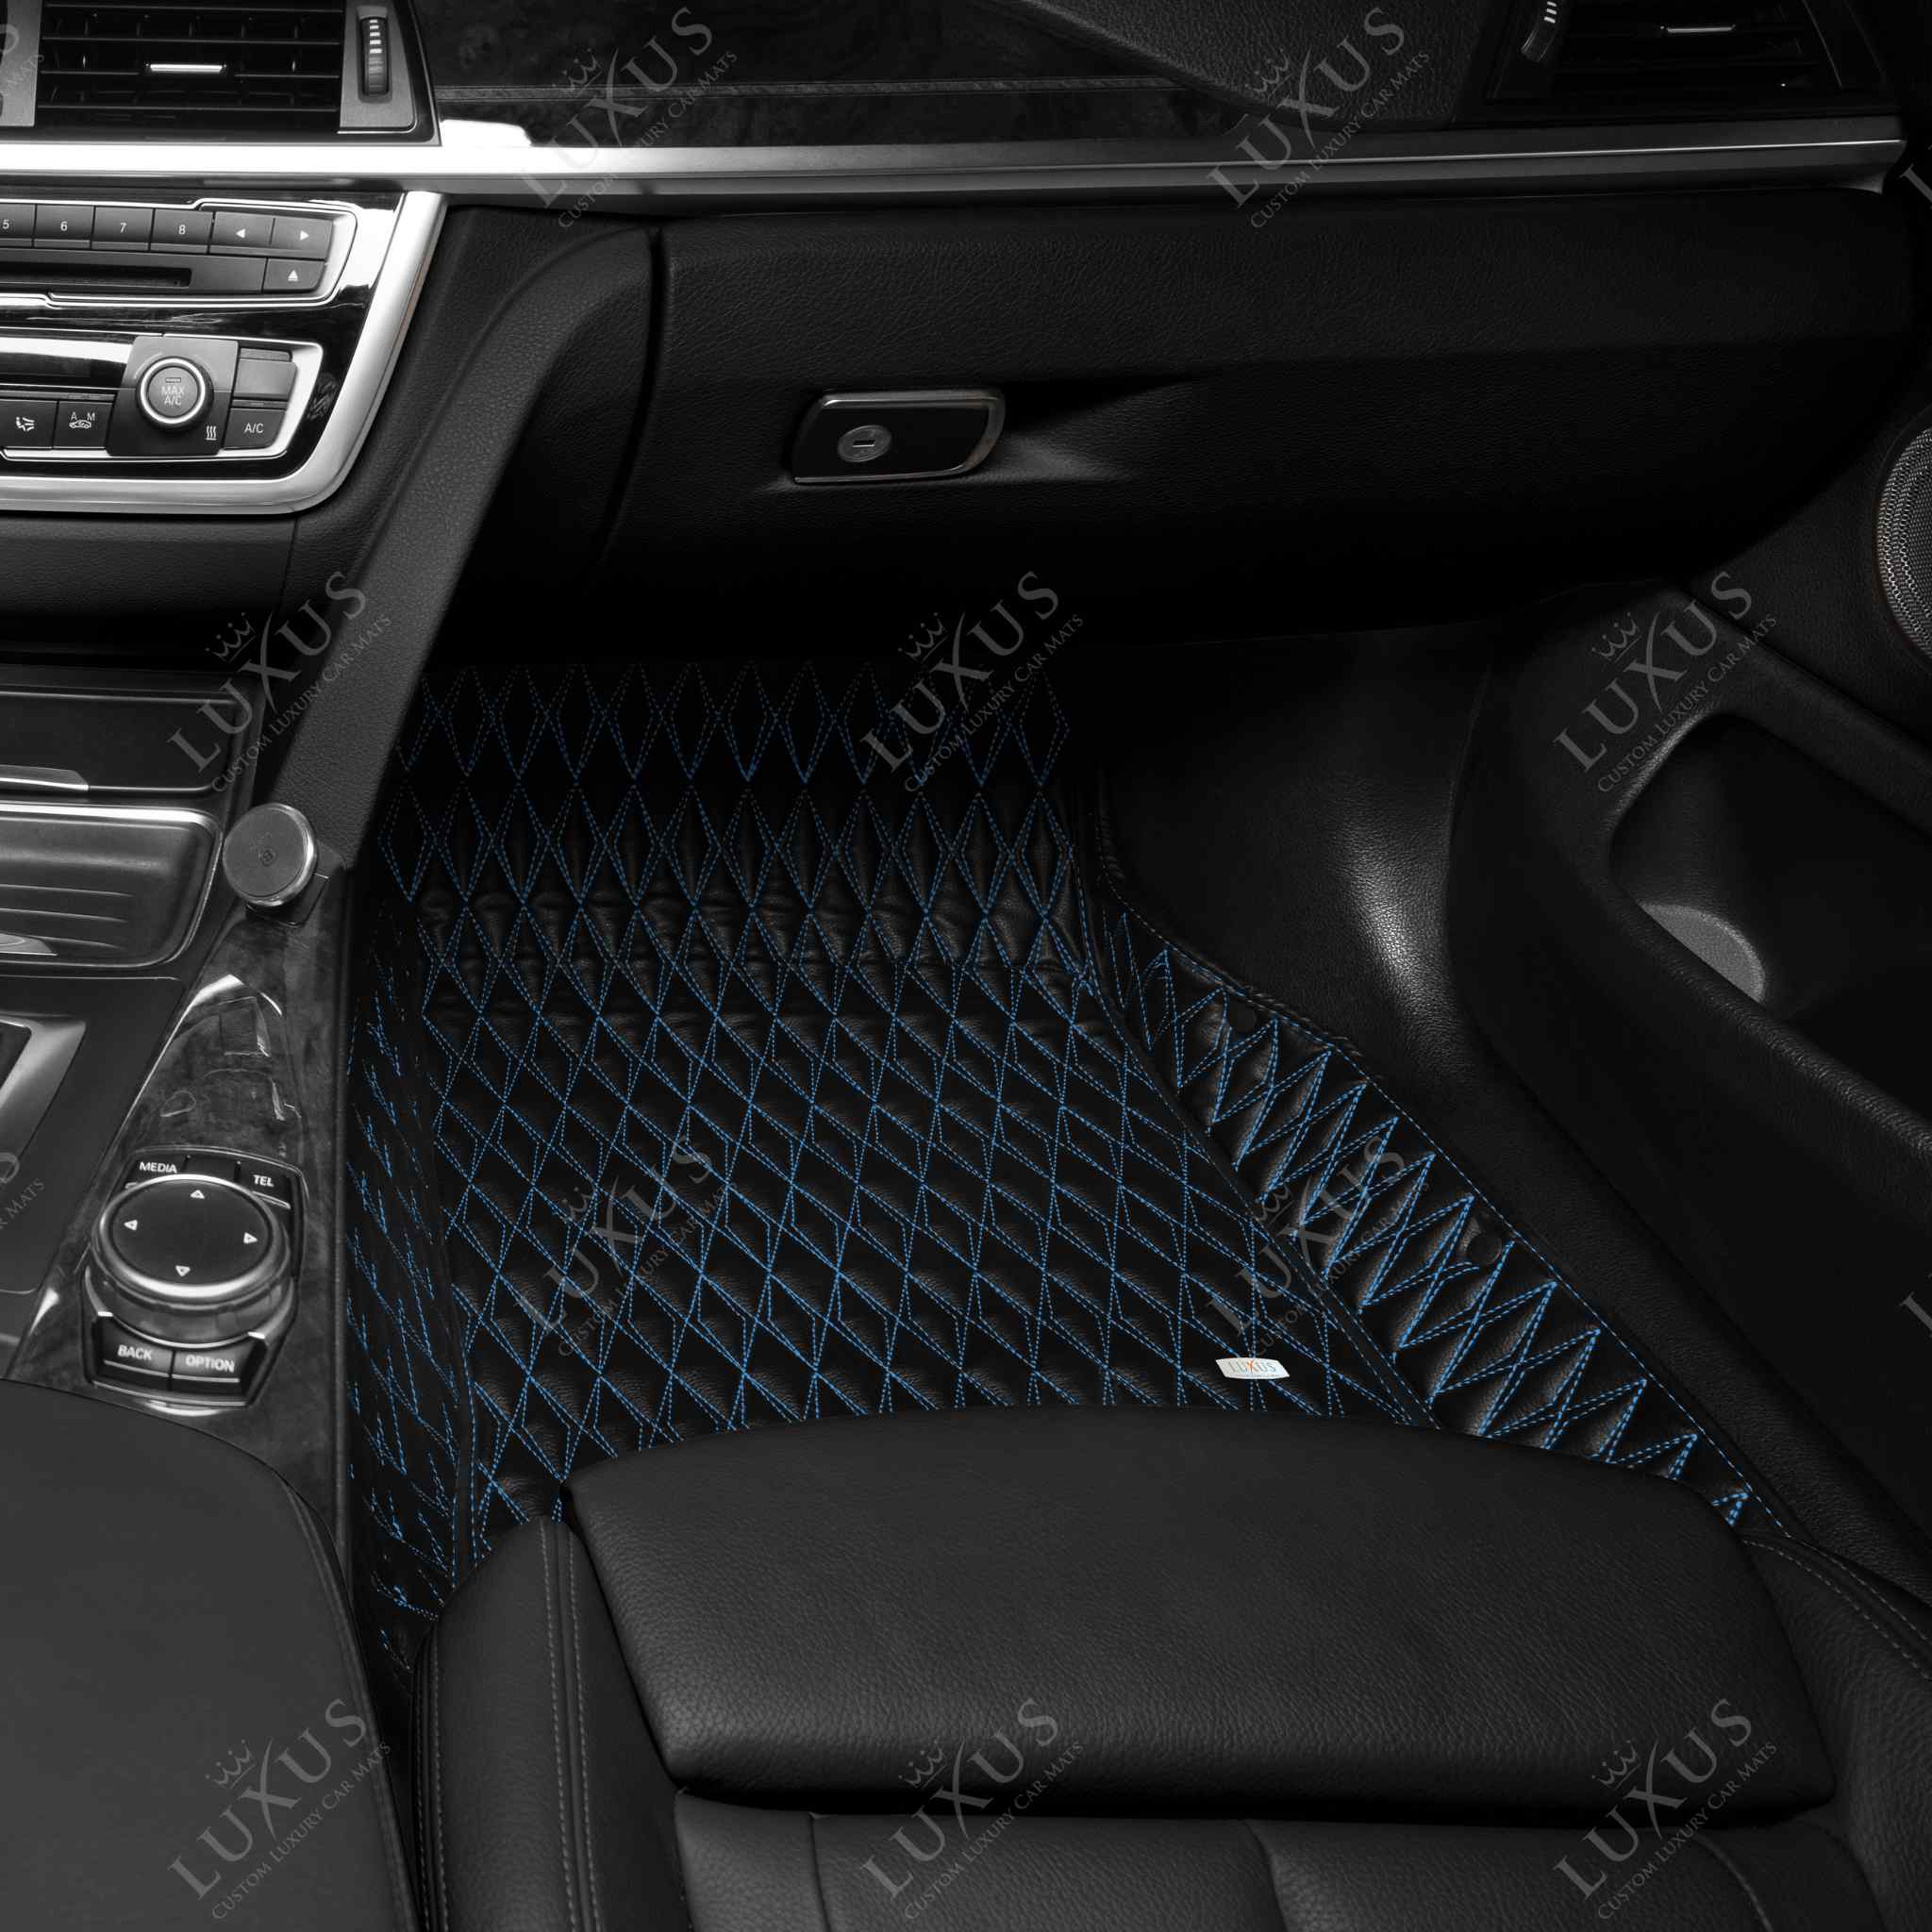 Twin-Diamond Black & Blue Stitching Luxury Car Mats Set